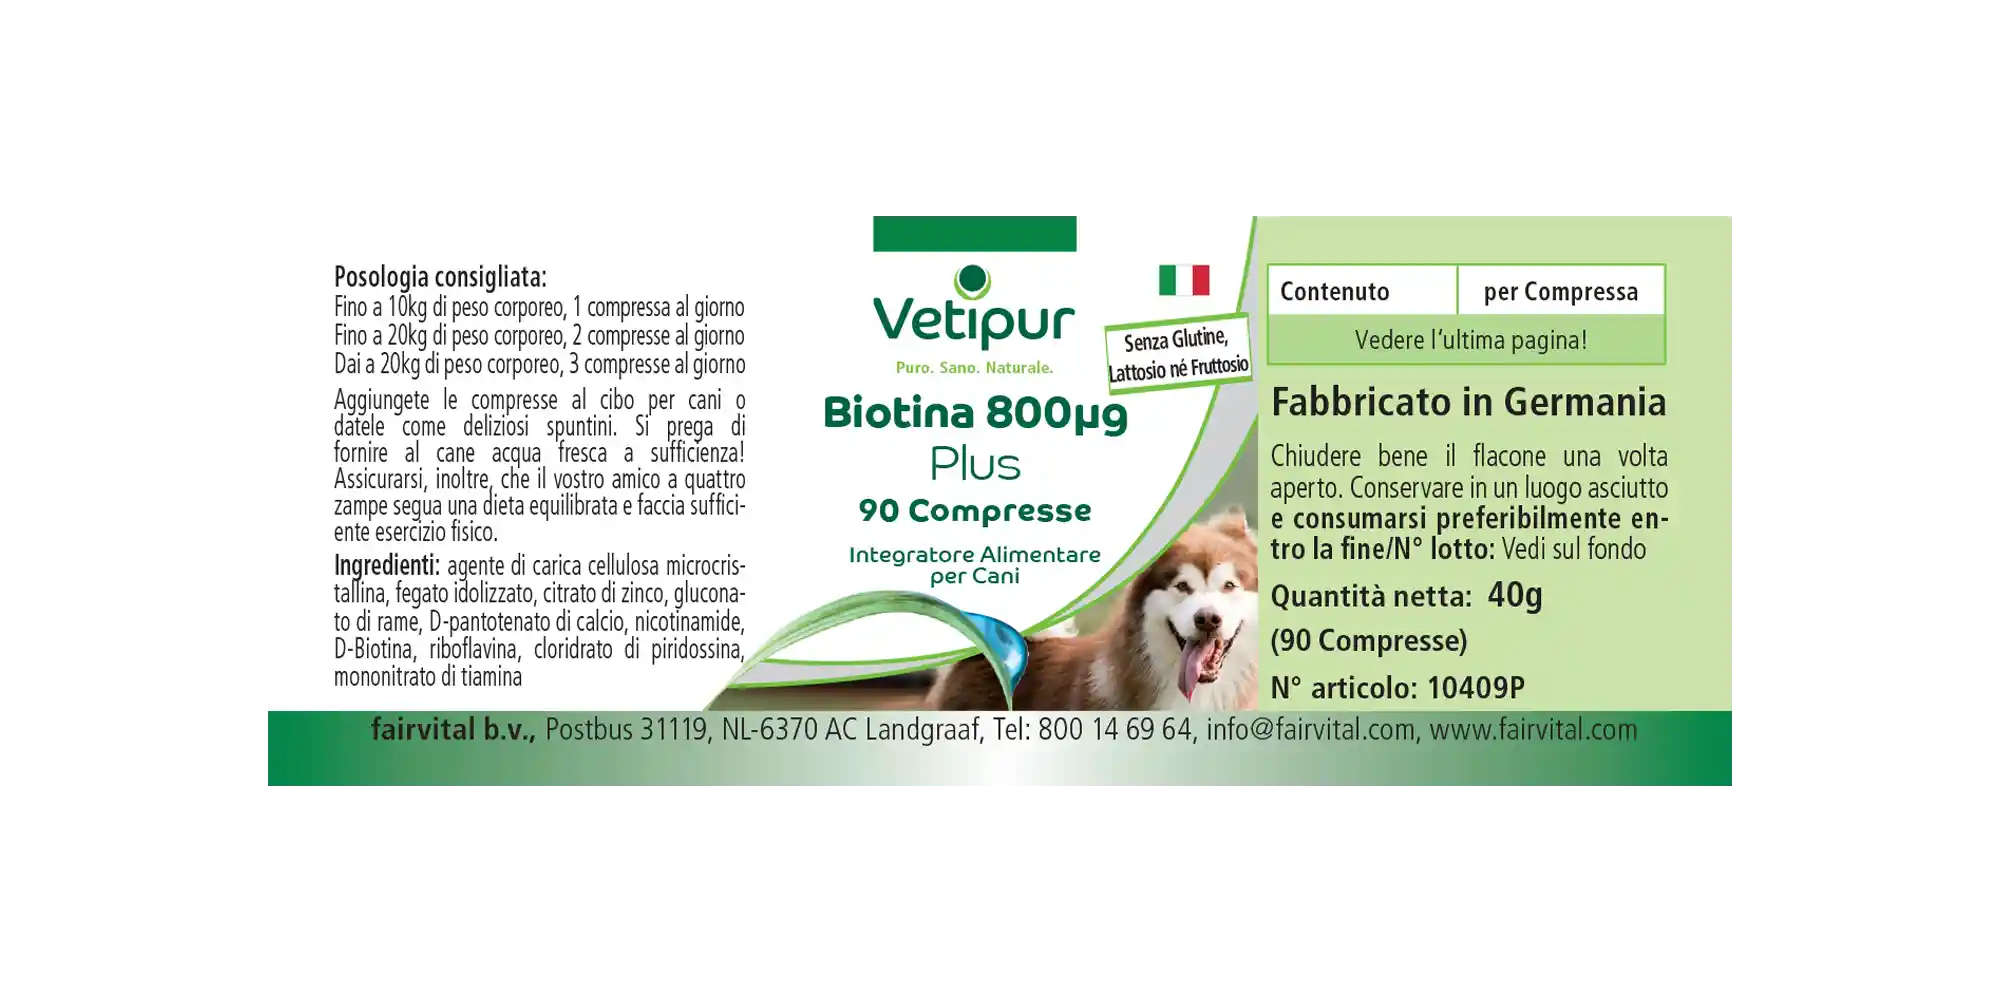 Biotine 800µg - 90 tabletten voor honden | Vetipur